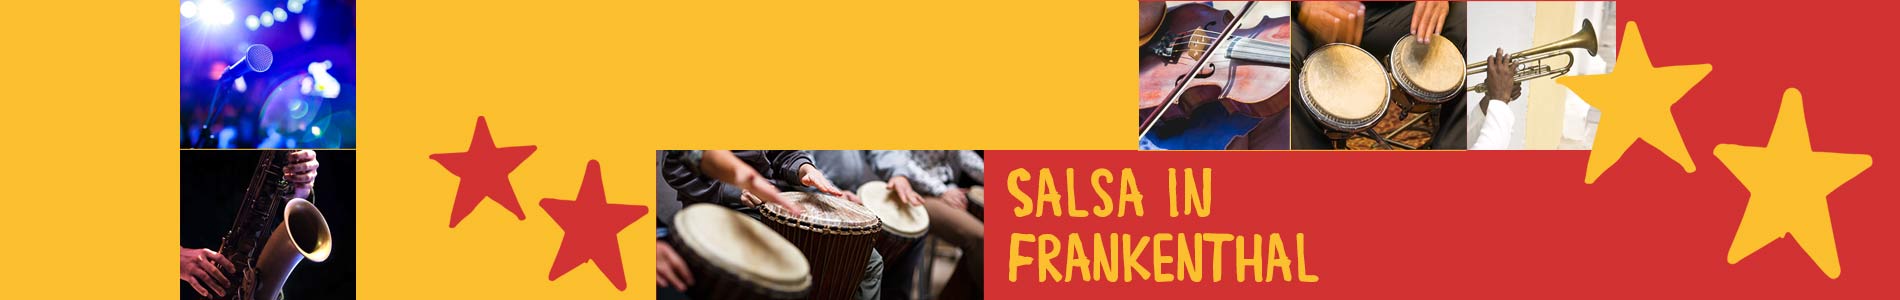 Salsa in Frankenthal – Salsa lernen und tanzen, Tanzkurse, Partys, Veranstaltungen